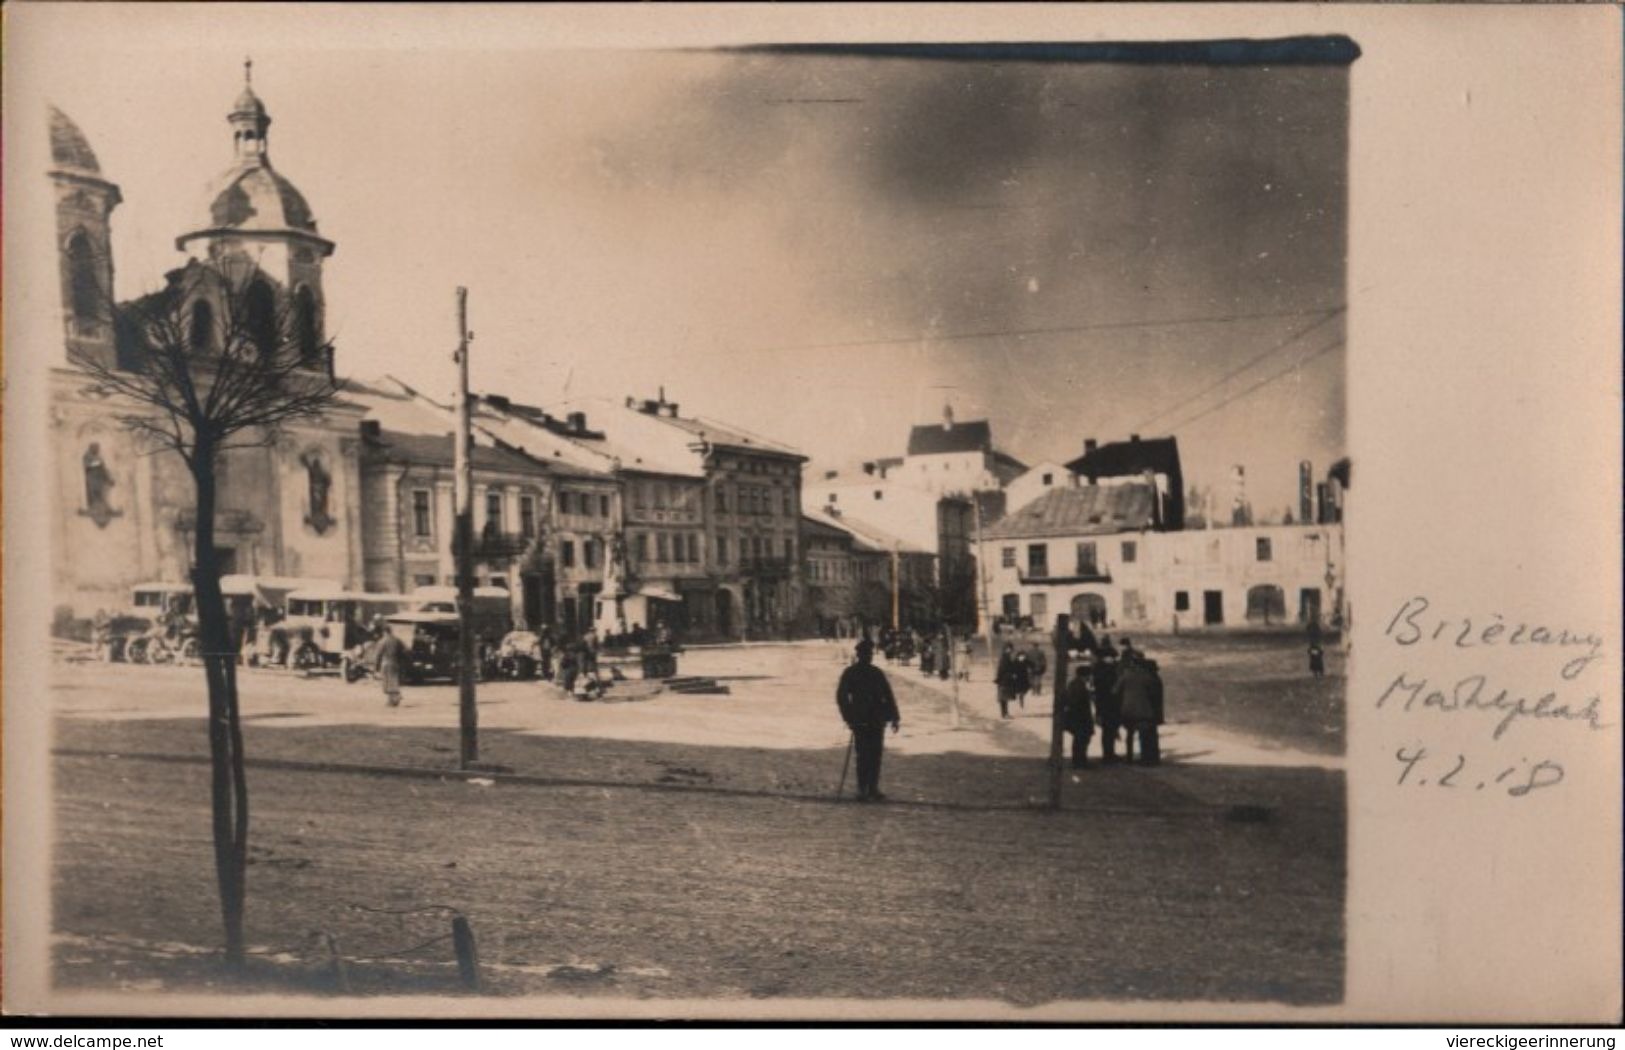 ! 3 Alte Fotokarten 1917, Photos, Bereschany, Brzezany, Schloß, Markt, 1. Weltkrieg, Ukraine, Obl. Ternopil - Ucrania